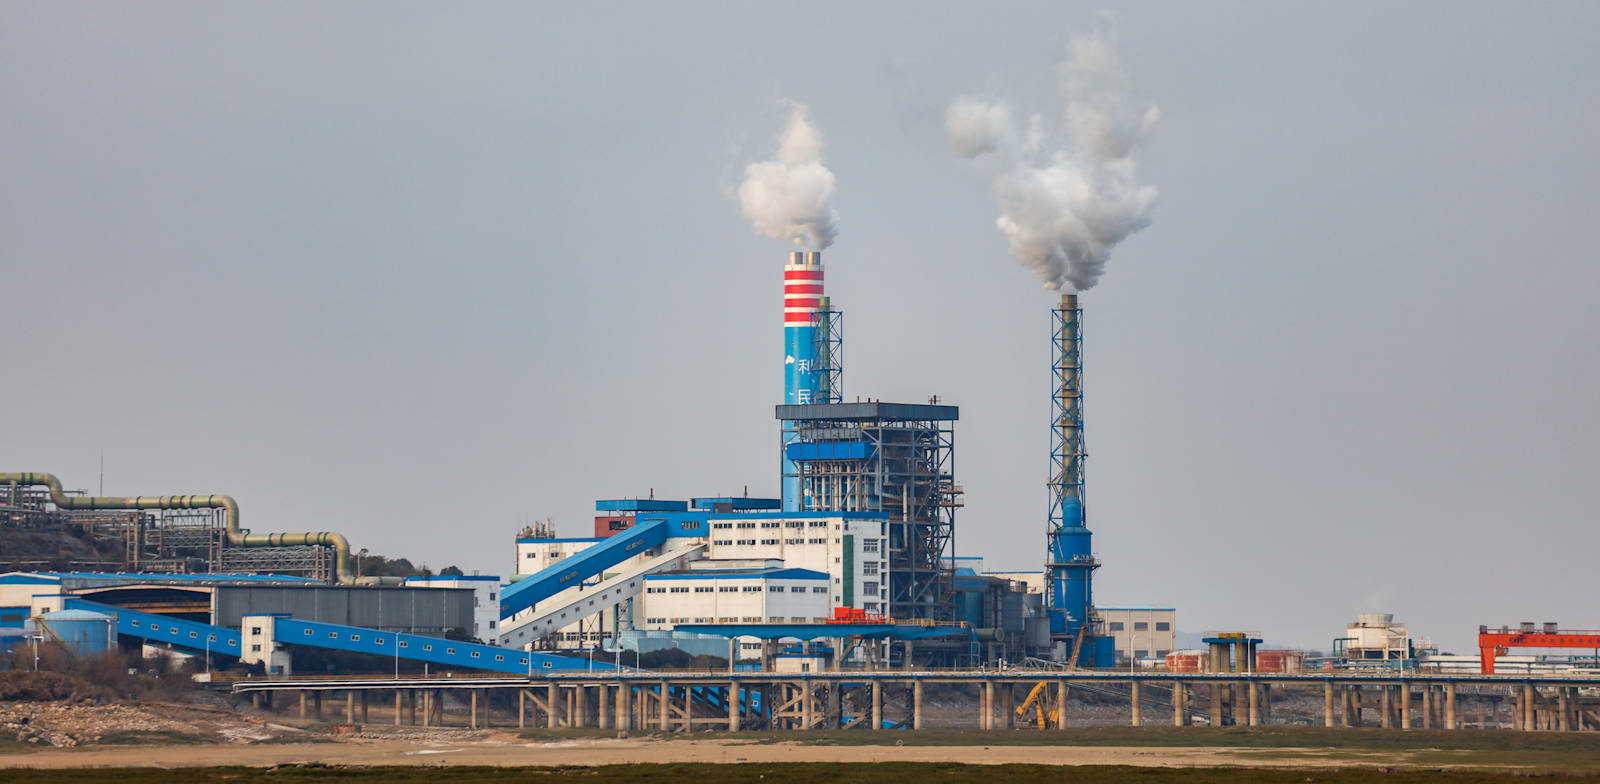 מפעל לעיבוד פחם בסין / צילום: Shutterstock, humphery